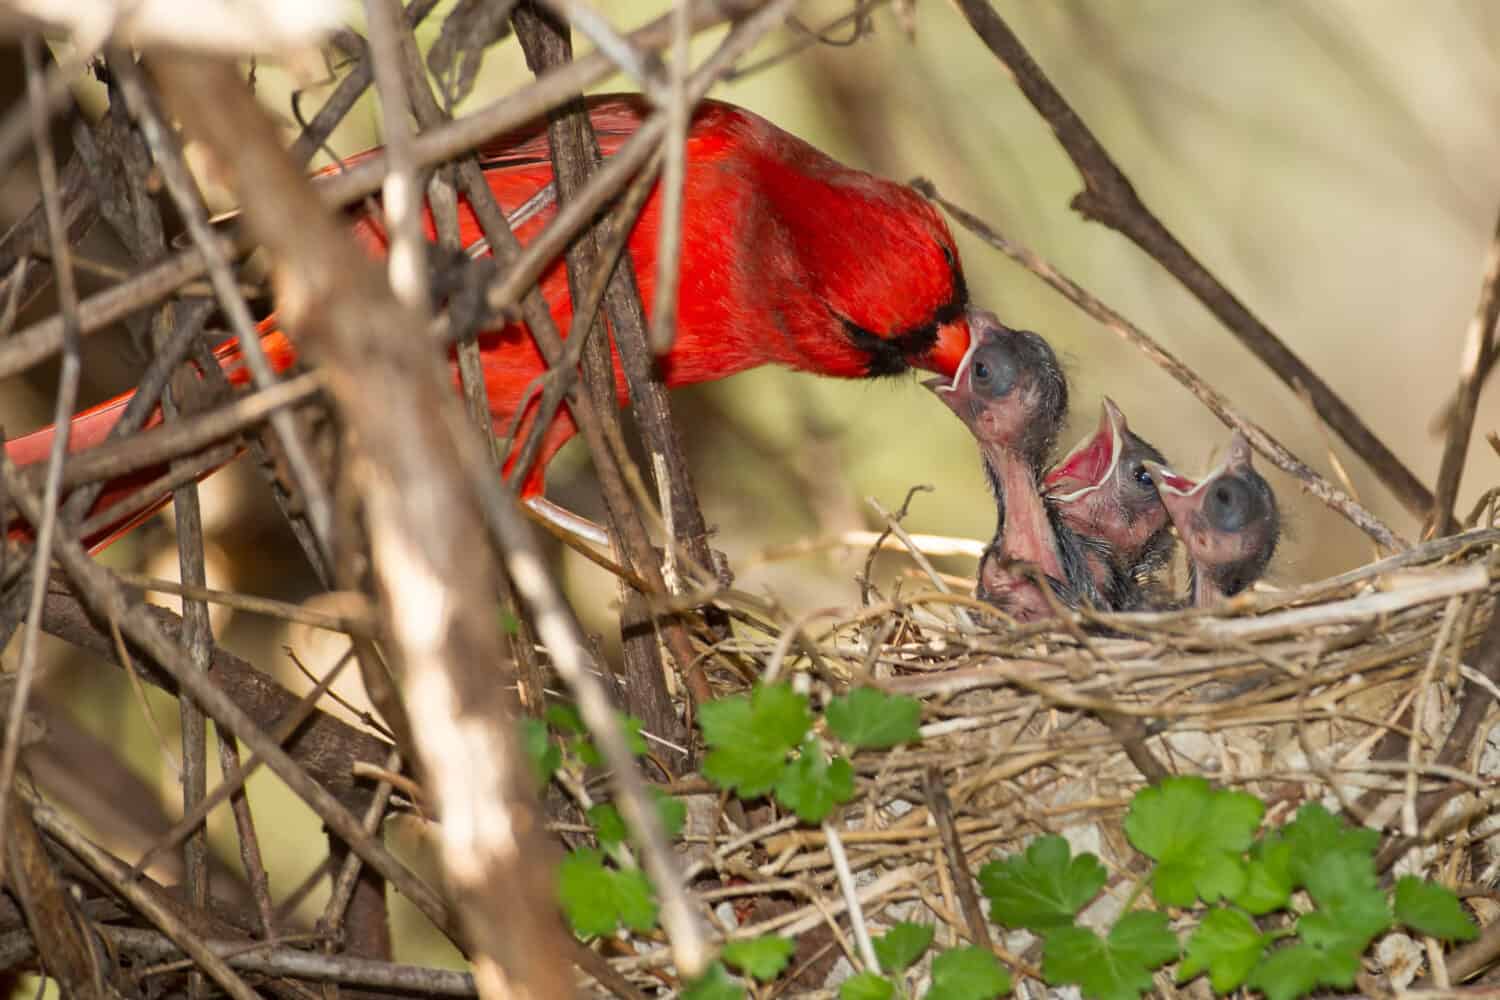 Northern cardinal, cardinalis cardinalis feeding babies chicks, Agnieszka Bacal.